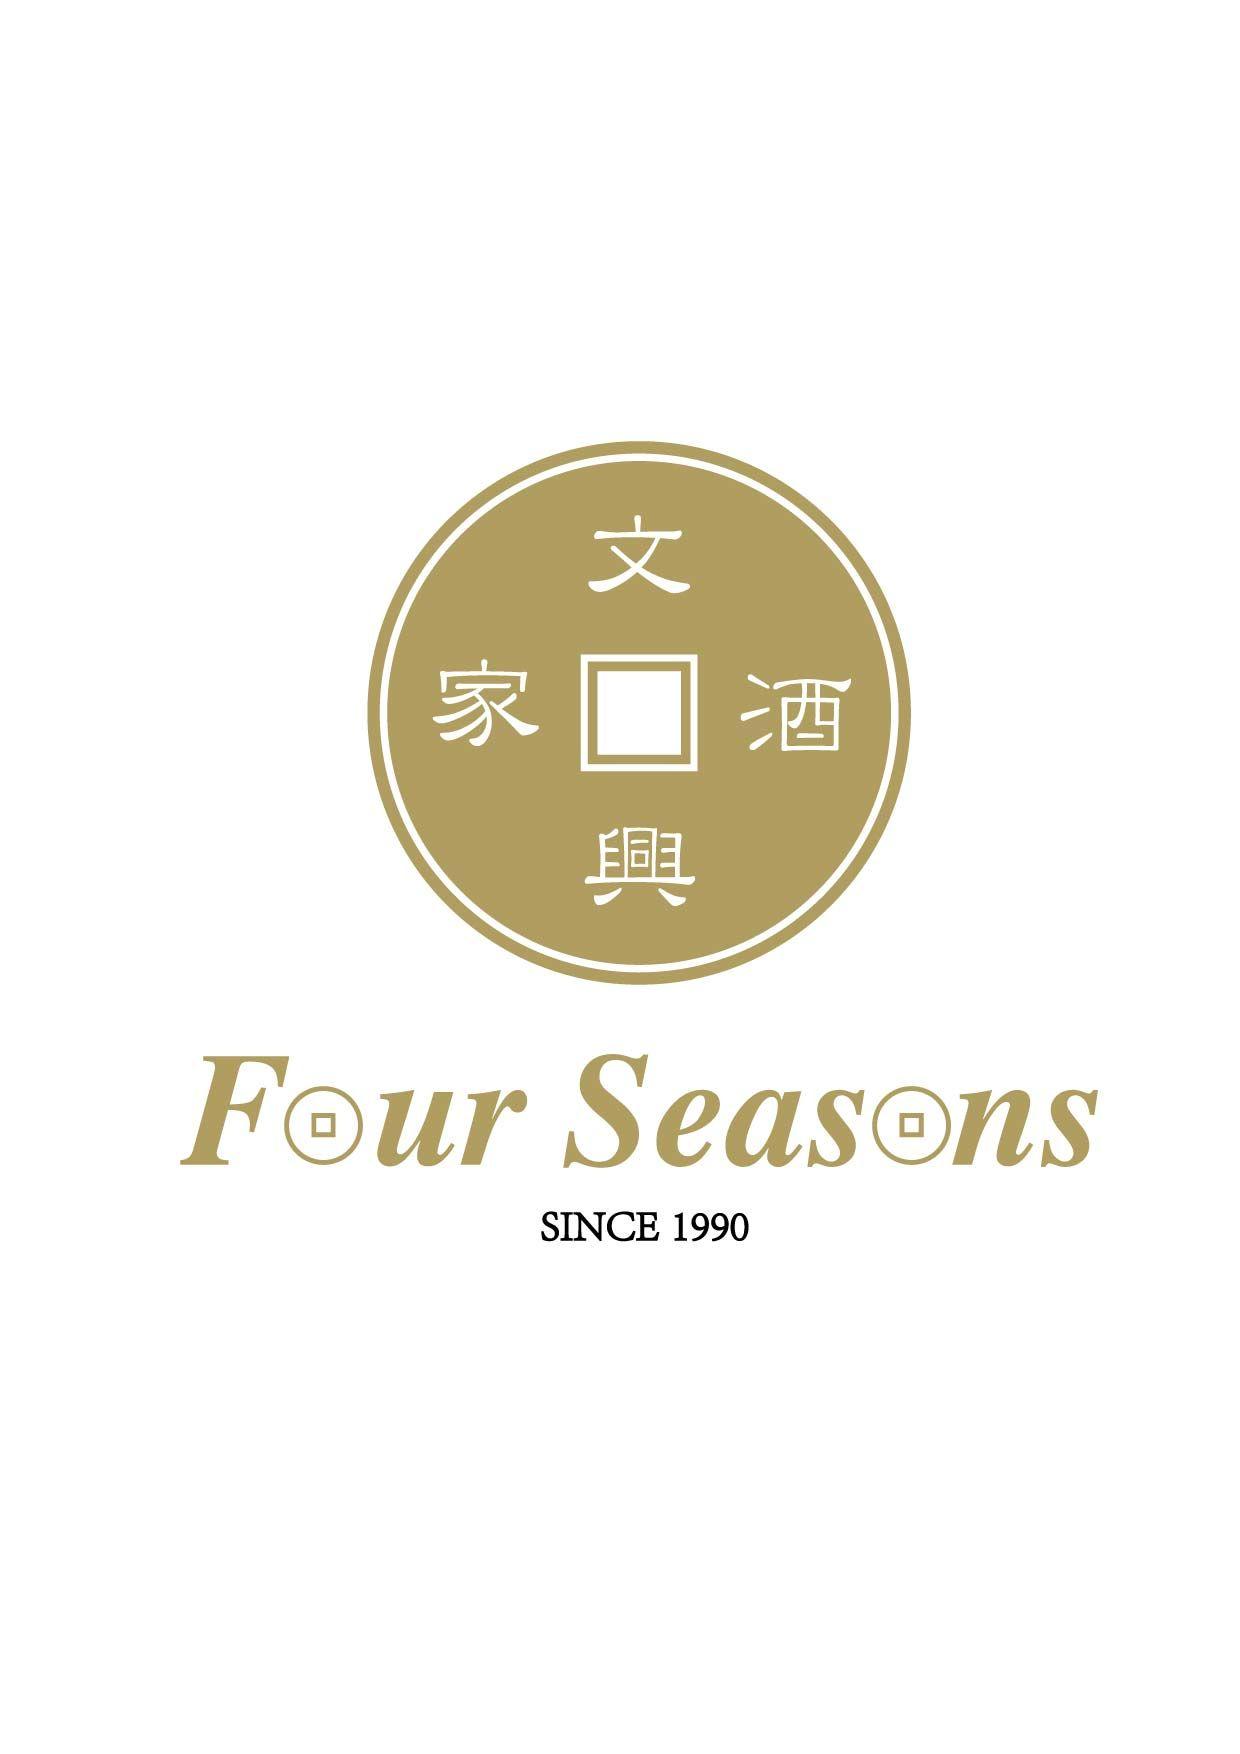 Seasons Logo - Four seasons logo - Bang Bang Oriental